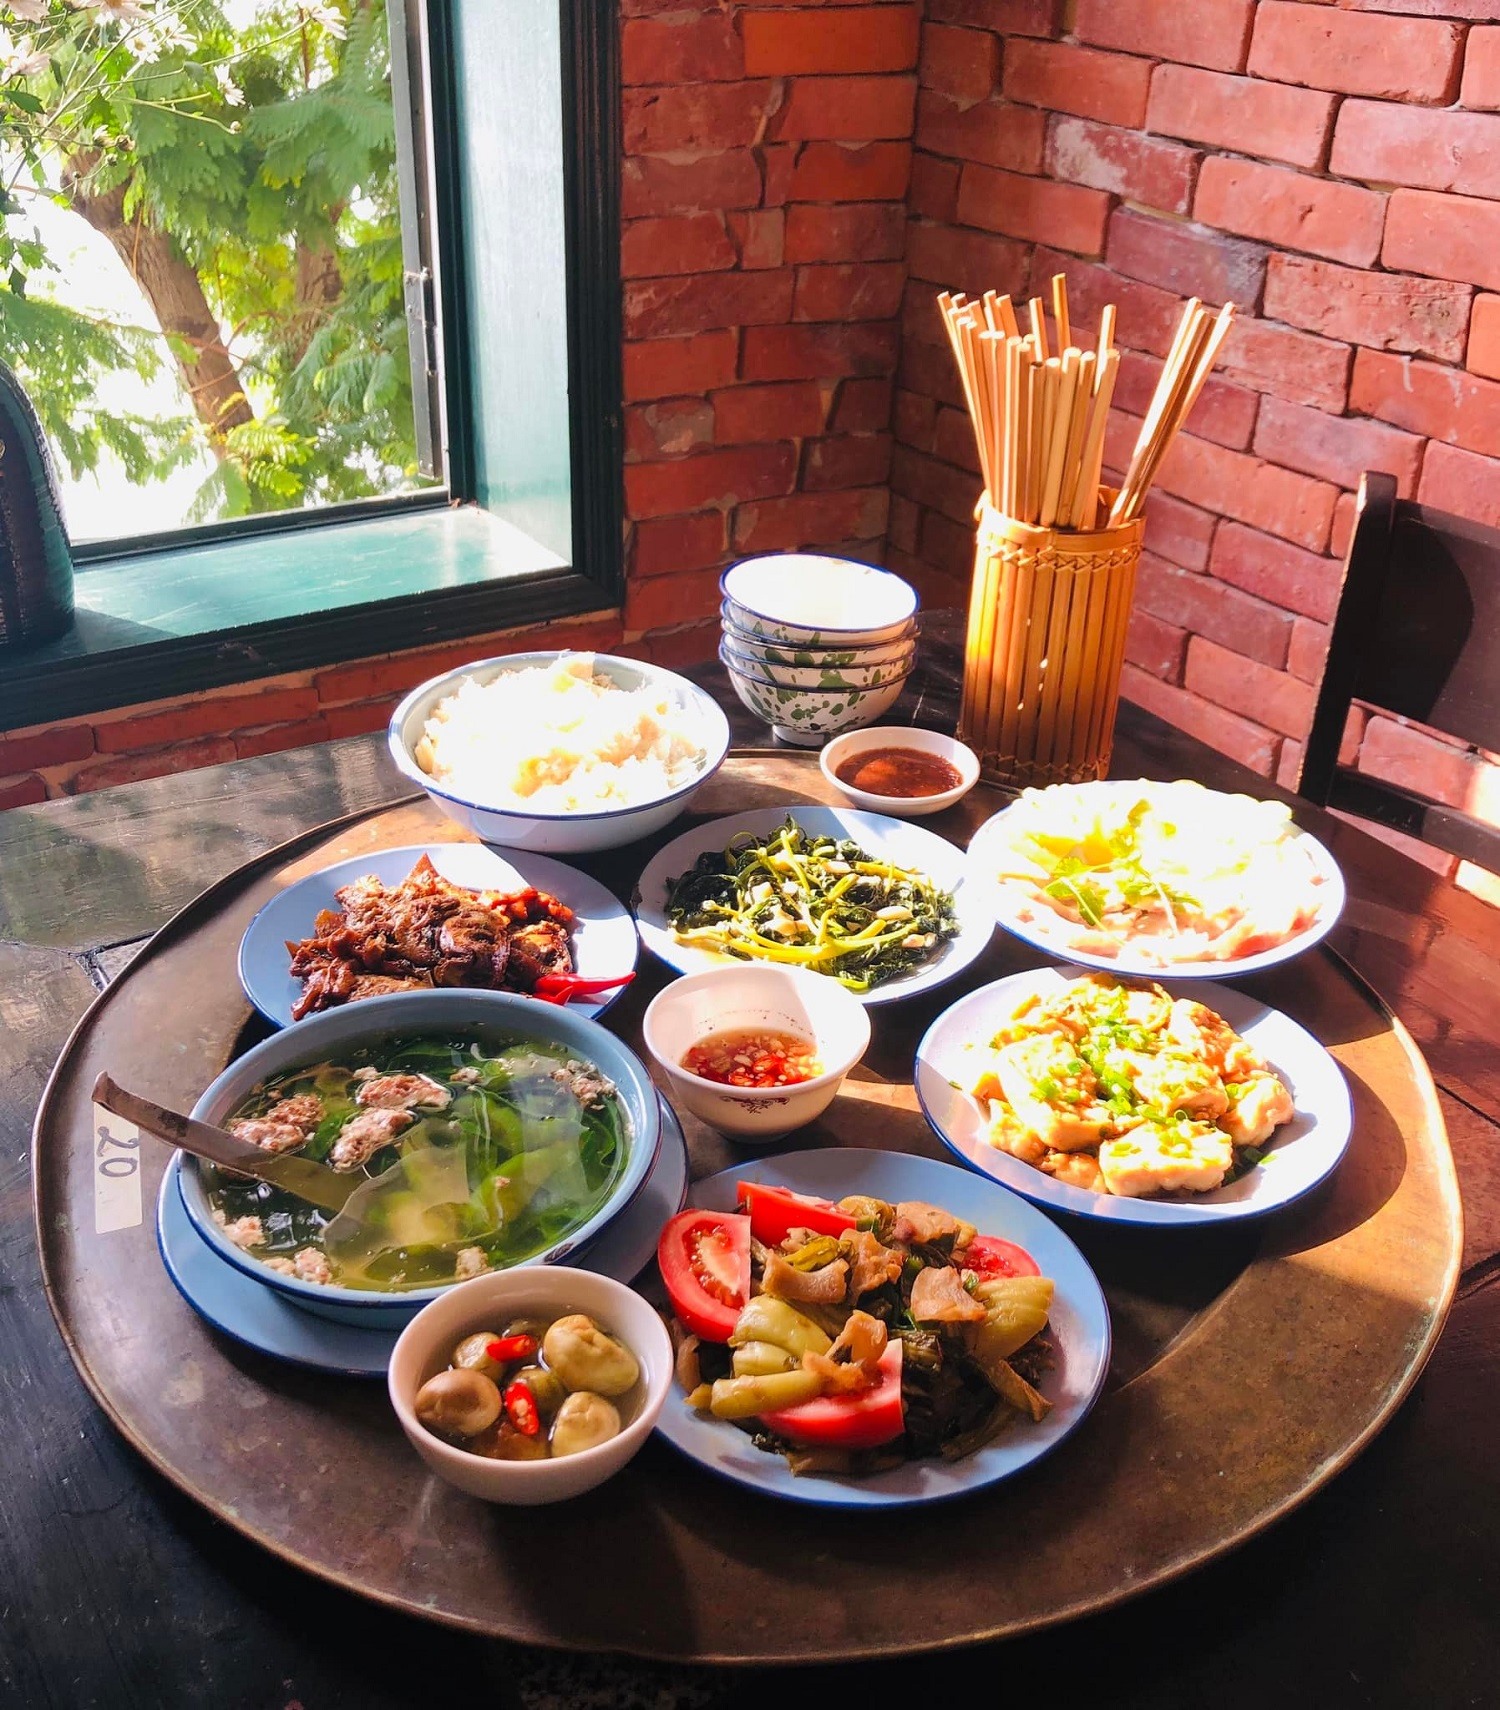 Mâm cơm với các món dân dã, thuần Việt. Ảnh: Cửa Hàng Ăn Uống Mậu Dịch Số 37